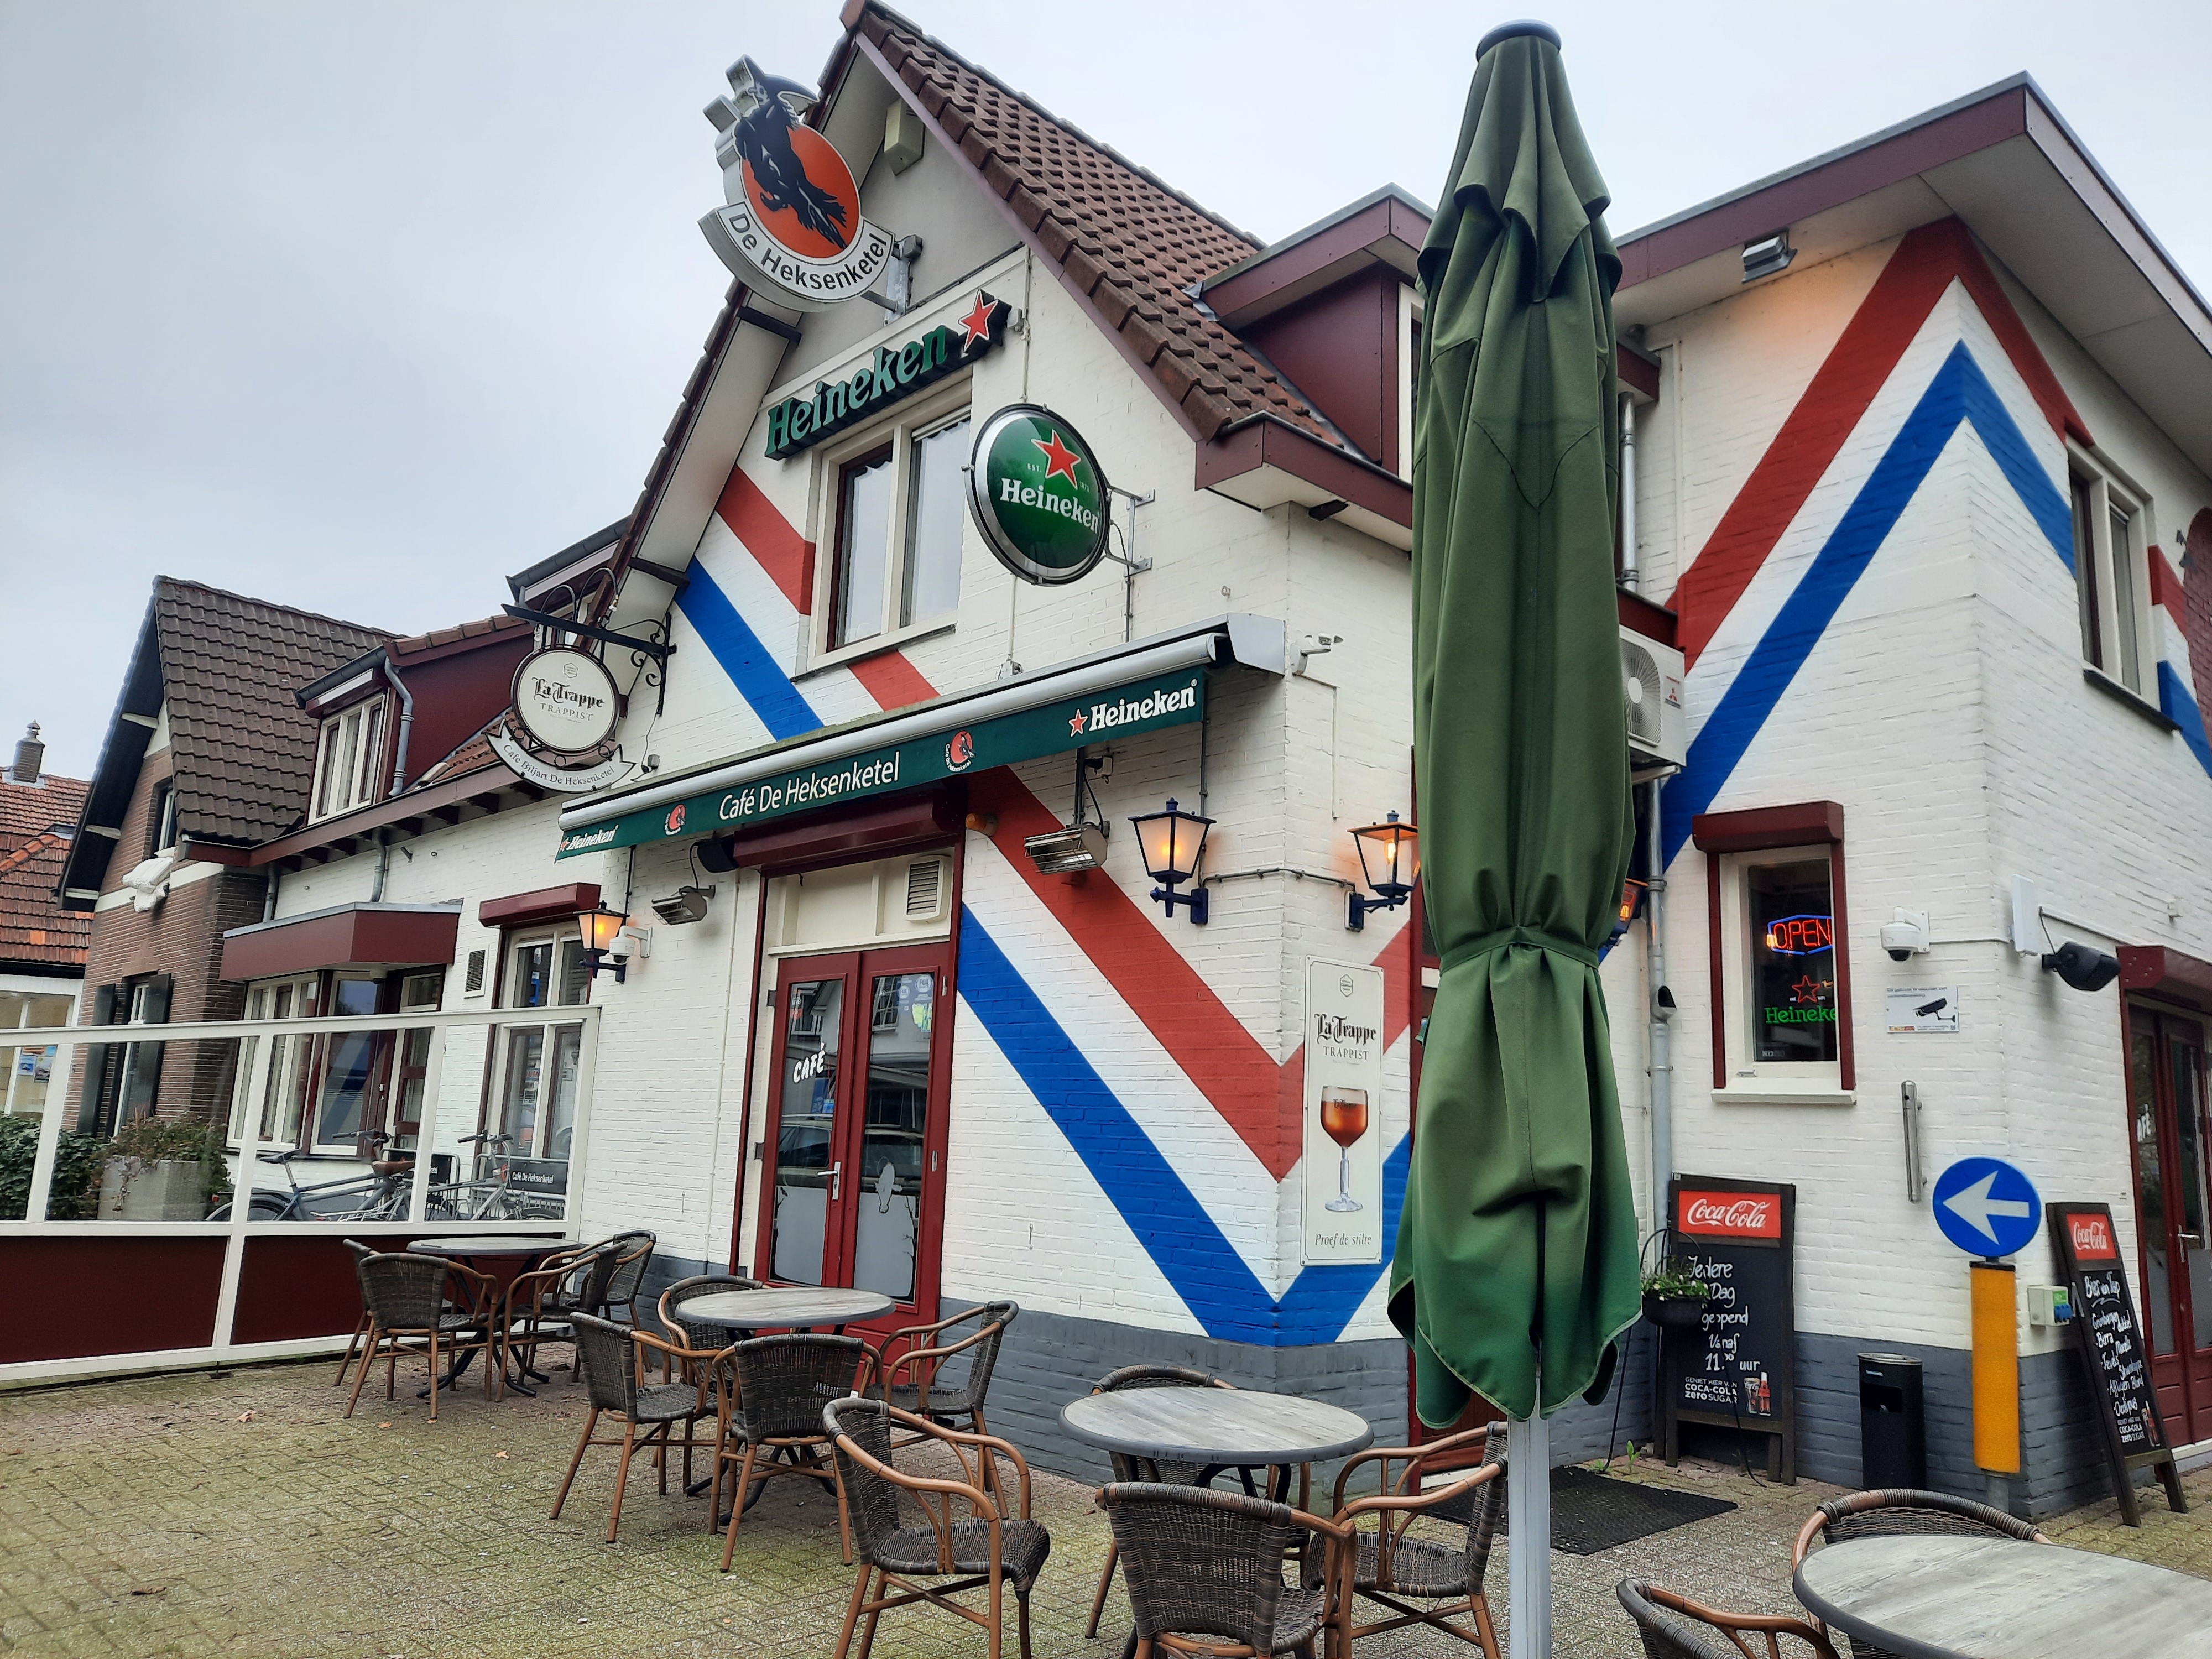 Café De Heksenketel Beekbergen in Beekbergen